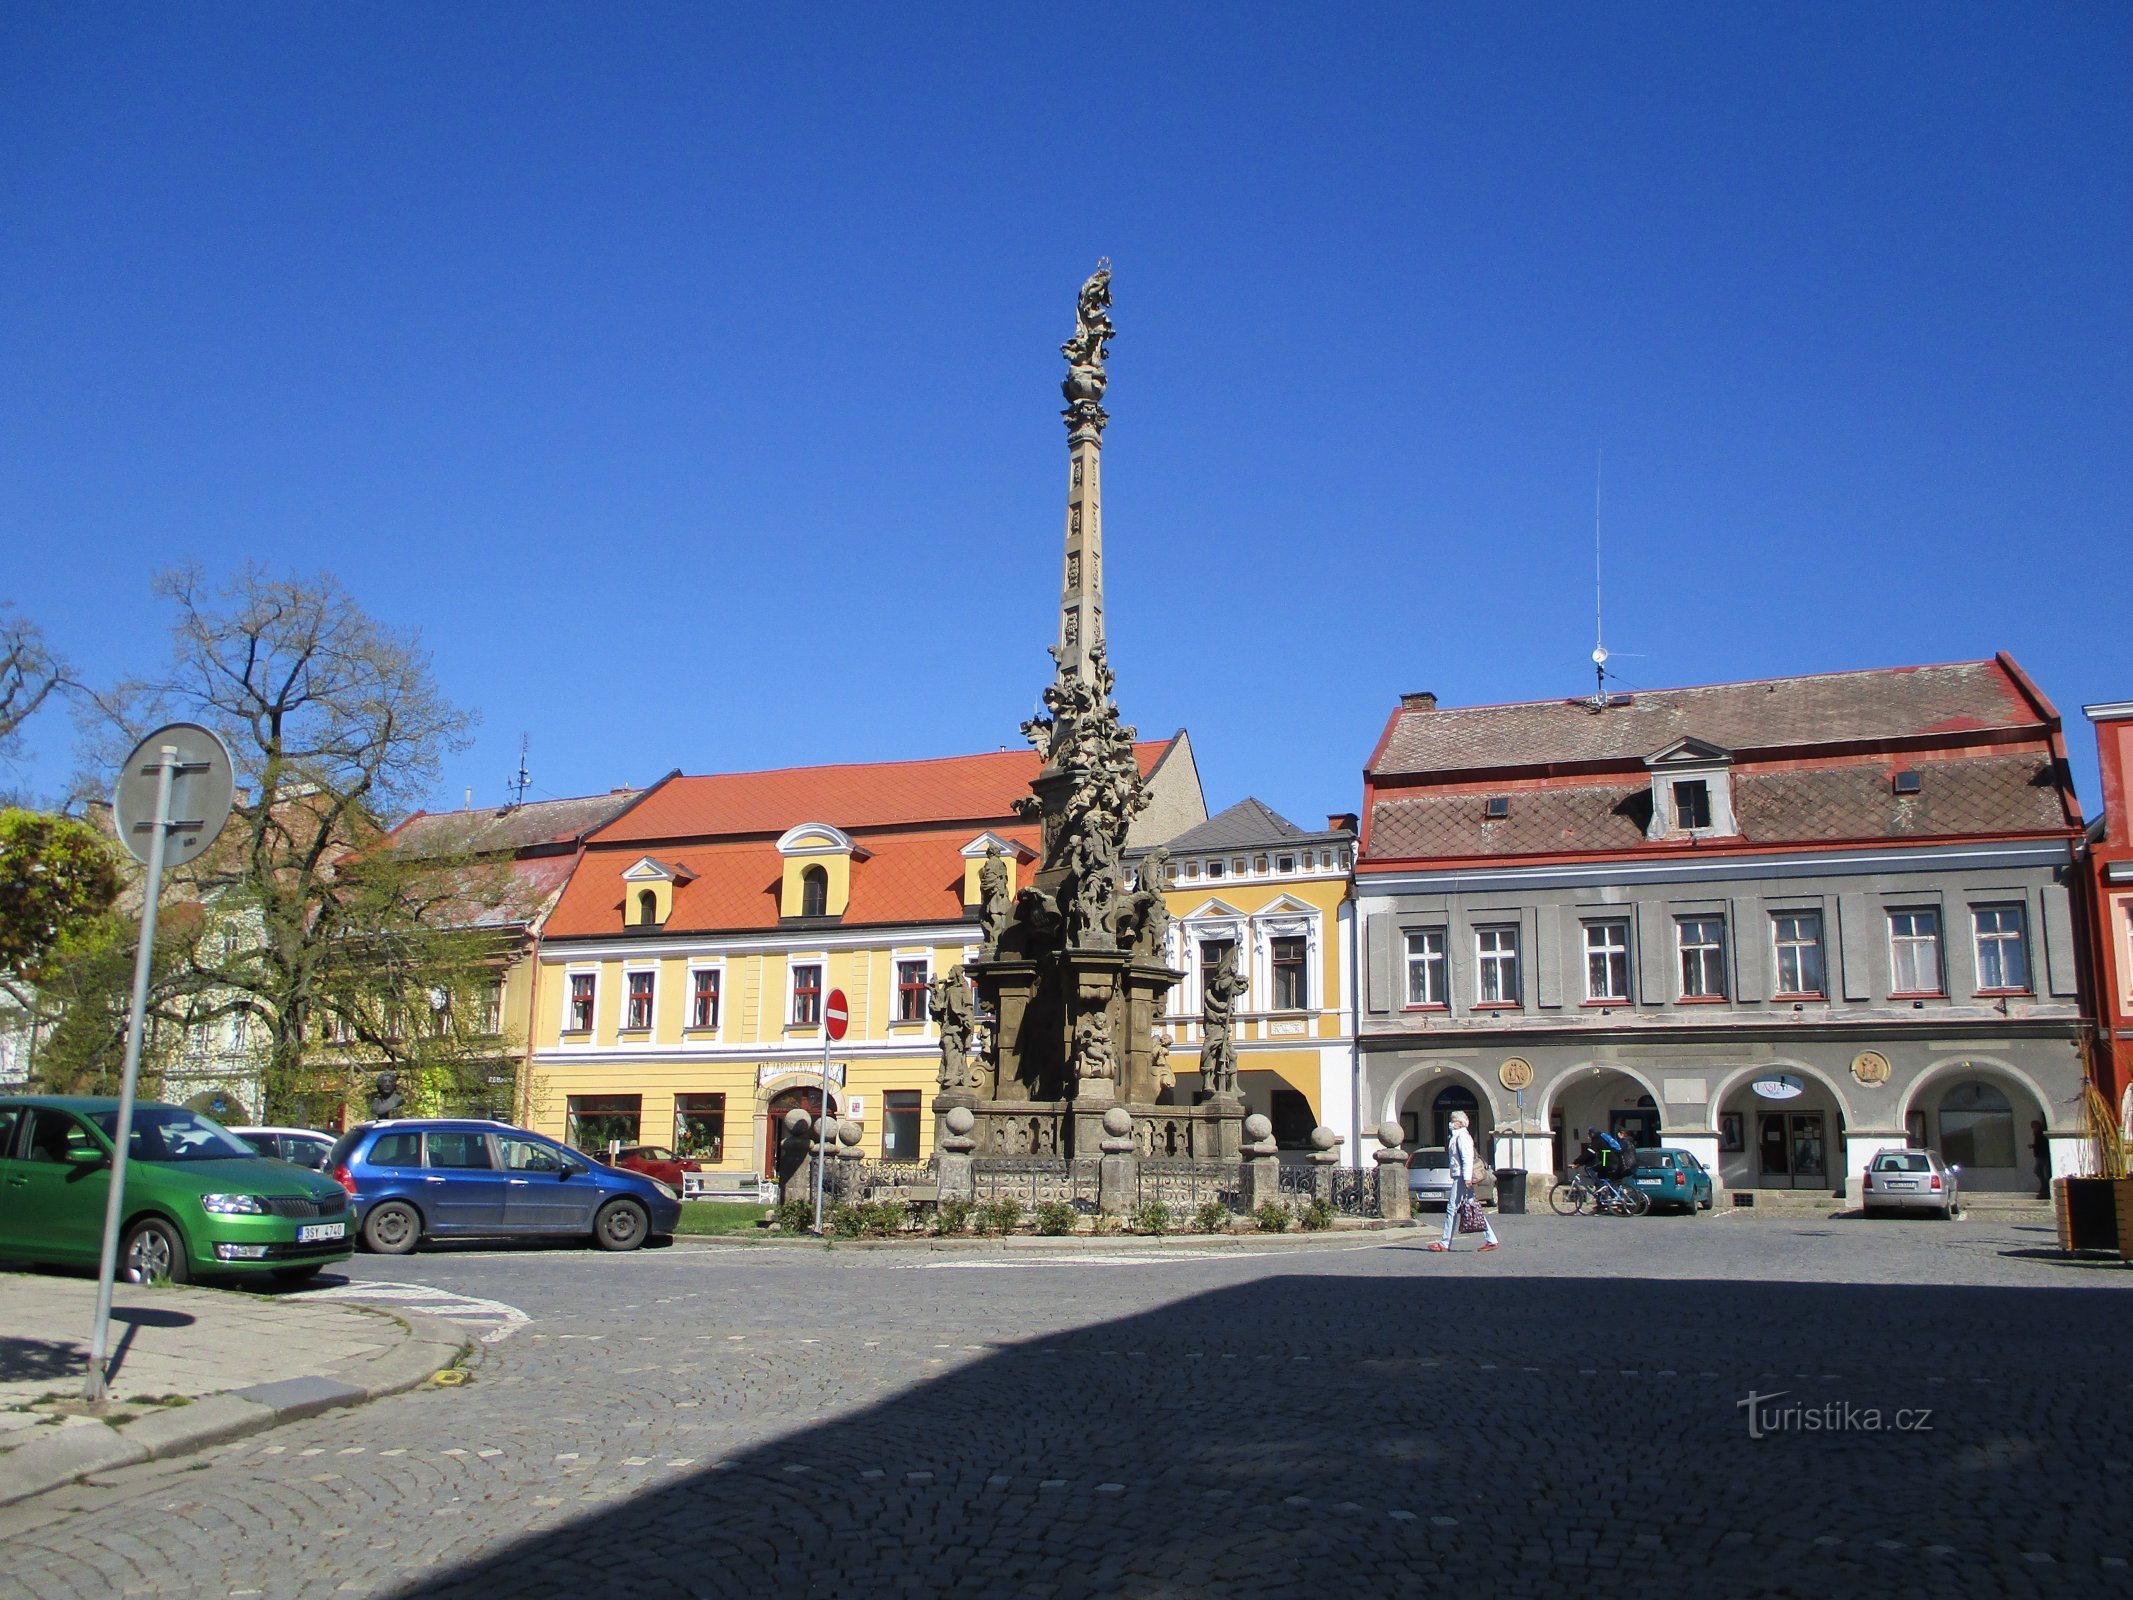 Czechoslovak Army Square (Jaroměř, April 22.4.2020, XNUMX)